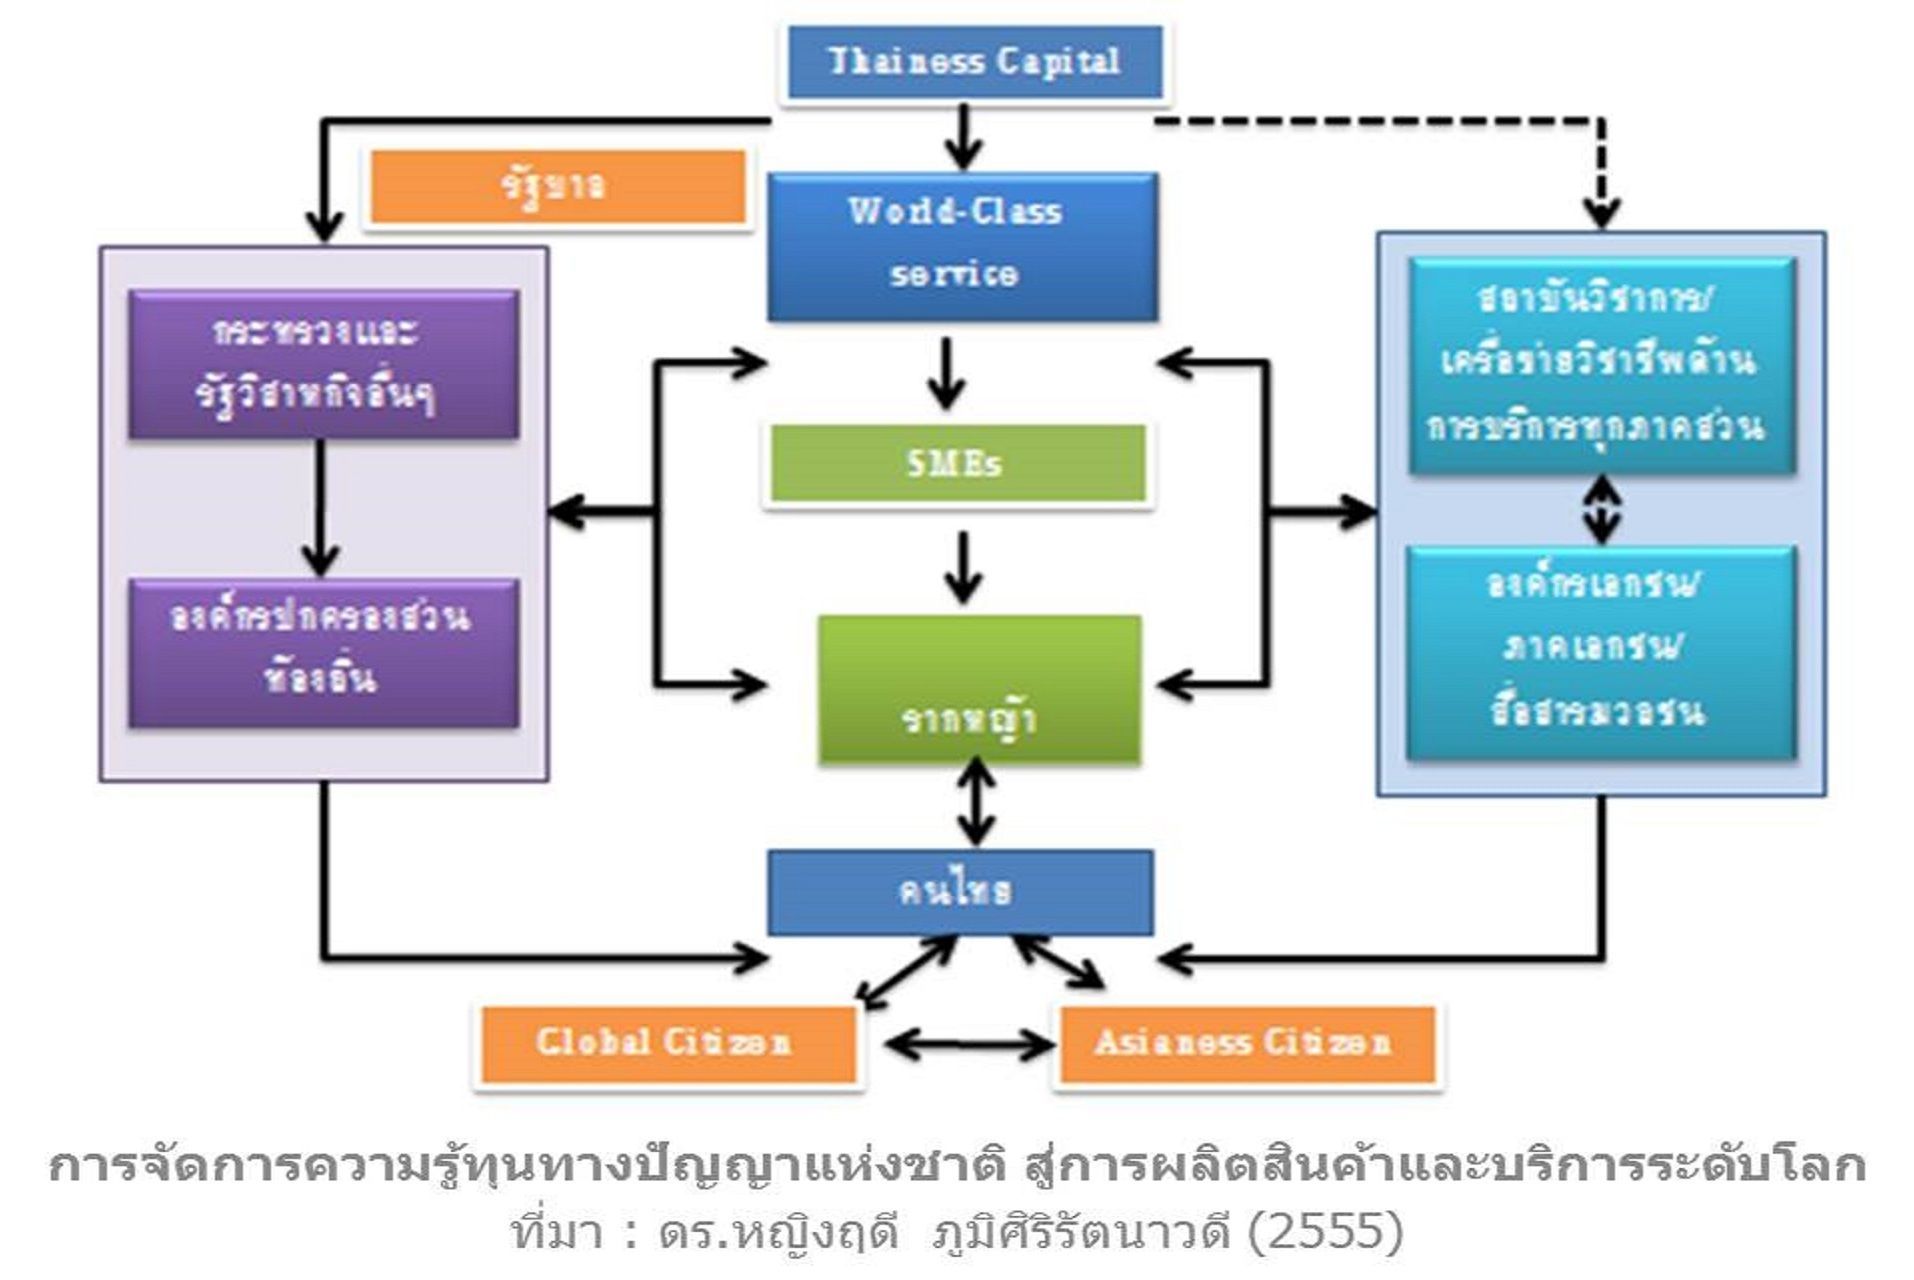 หลักสูตรทุนคนไทย เพื่อการพัฒนาความเป็นผู้นำจากวัฒนธรรมไทยสู่เวทีโลก